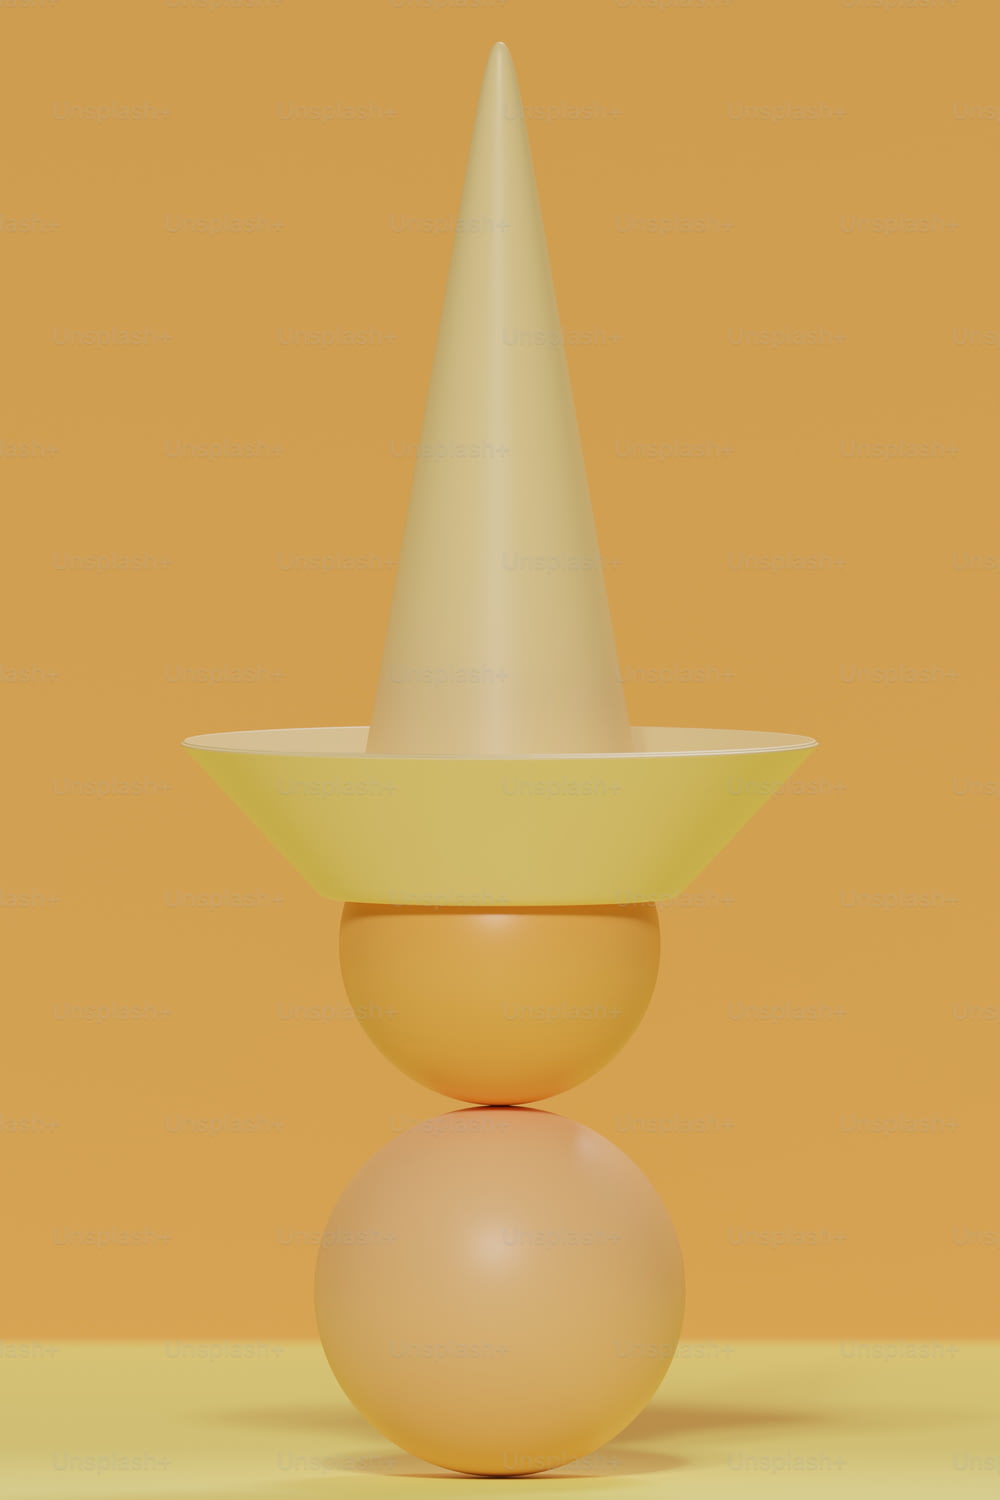 um objeto amarelo com um cone branco em cima dele